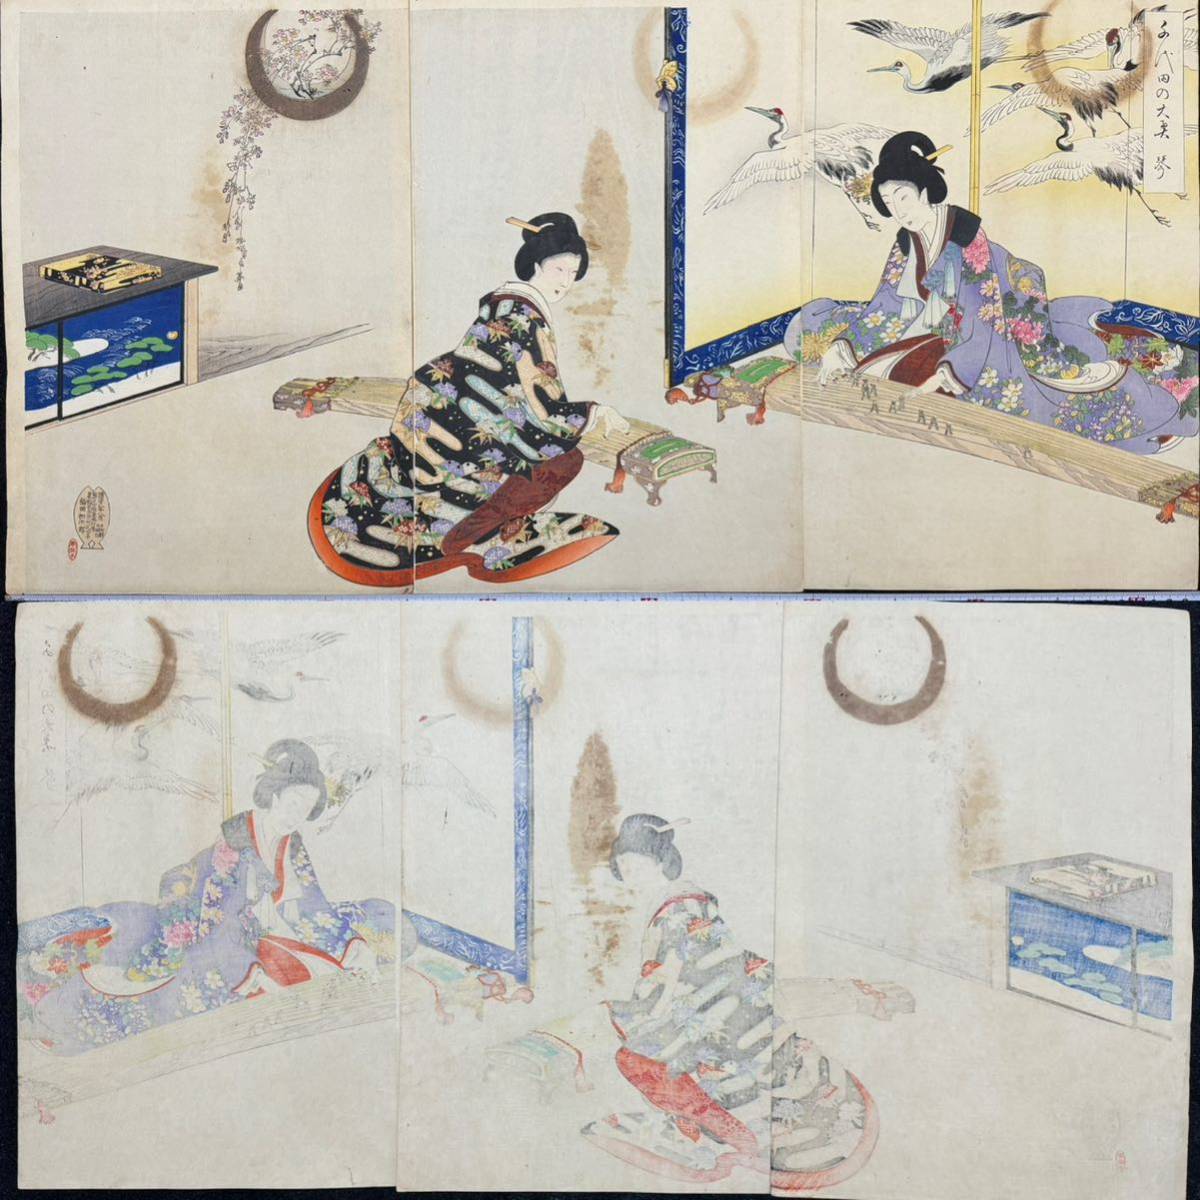 Período Meiji/Obra auténtica Yoshu Shuen Chiyoda no Ooku Koto Grabado en madera genuino Ukiyo-e, retrato de mujeres hermosas, nishikie, talla grande, tríptico, Cuadro, Ukiyo-e, Huellas dactilares, Retrato de una mujer hermosa